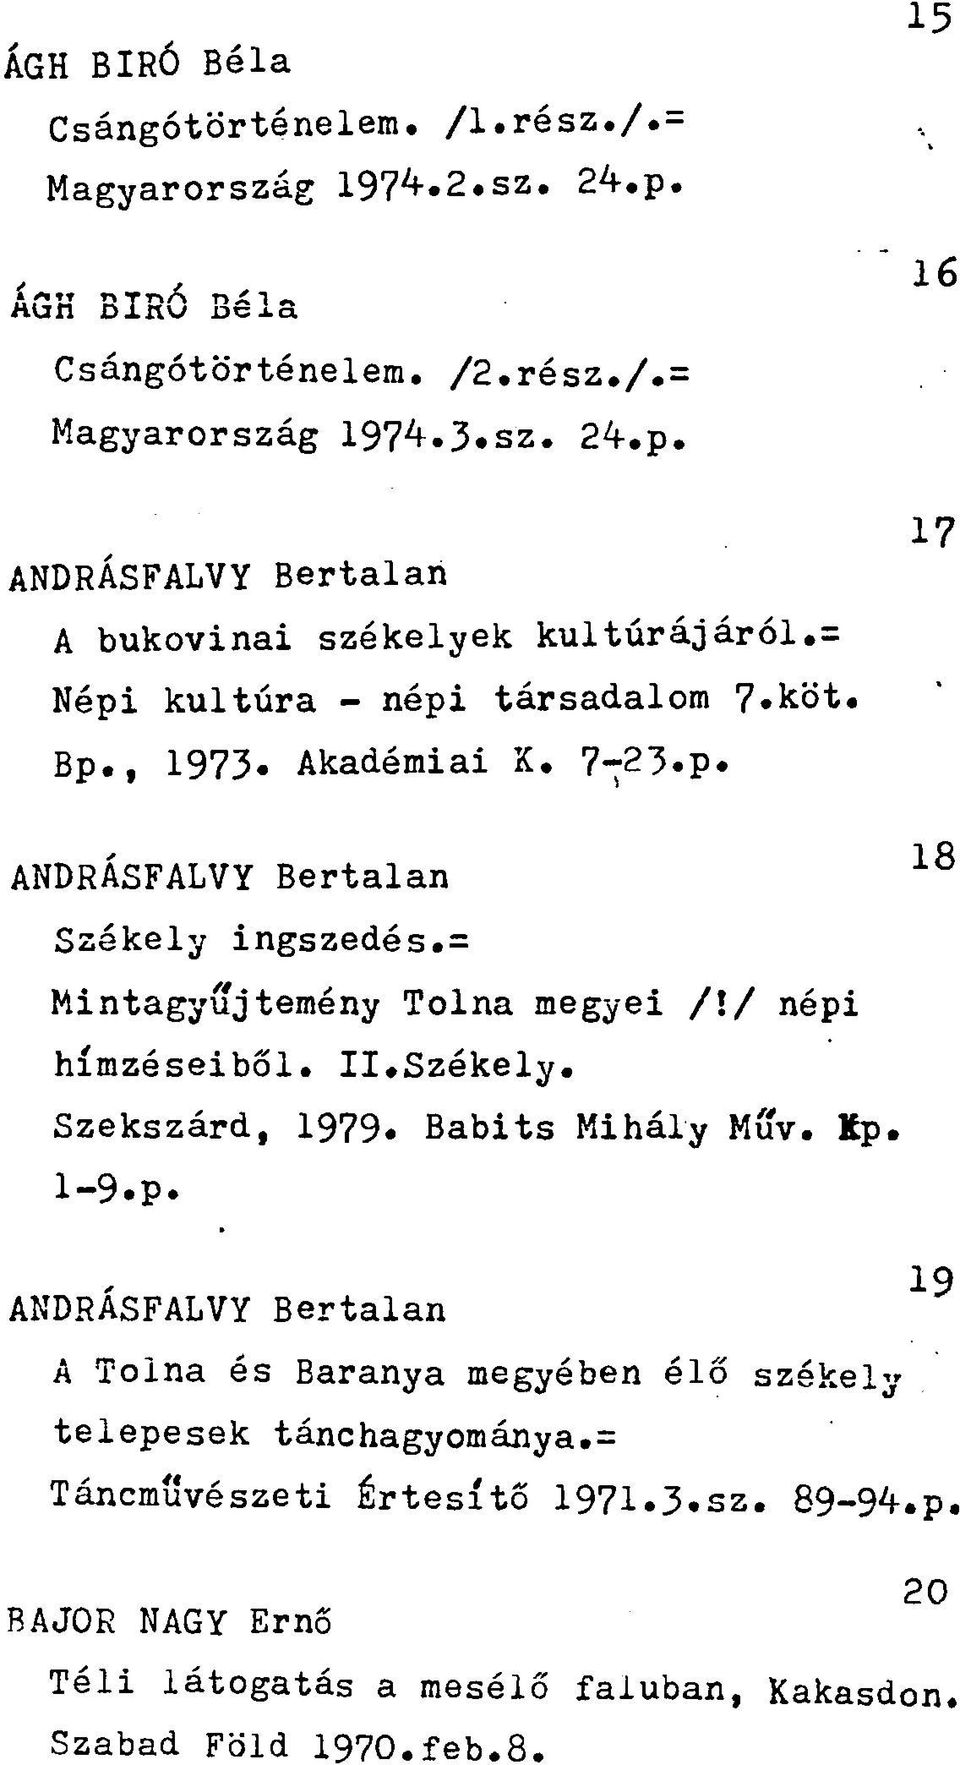 II.Székely. Szekszárd, 1979. Babits Mihály Muv. Kp. 1-9.p. 19 ANDRASFALVY Bertalan A Tolna és Baranya megyében élő székely telepesek tánchagyománya.